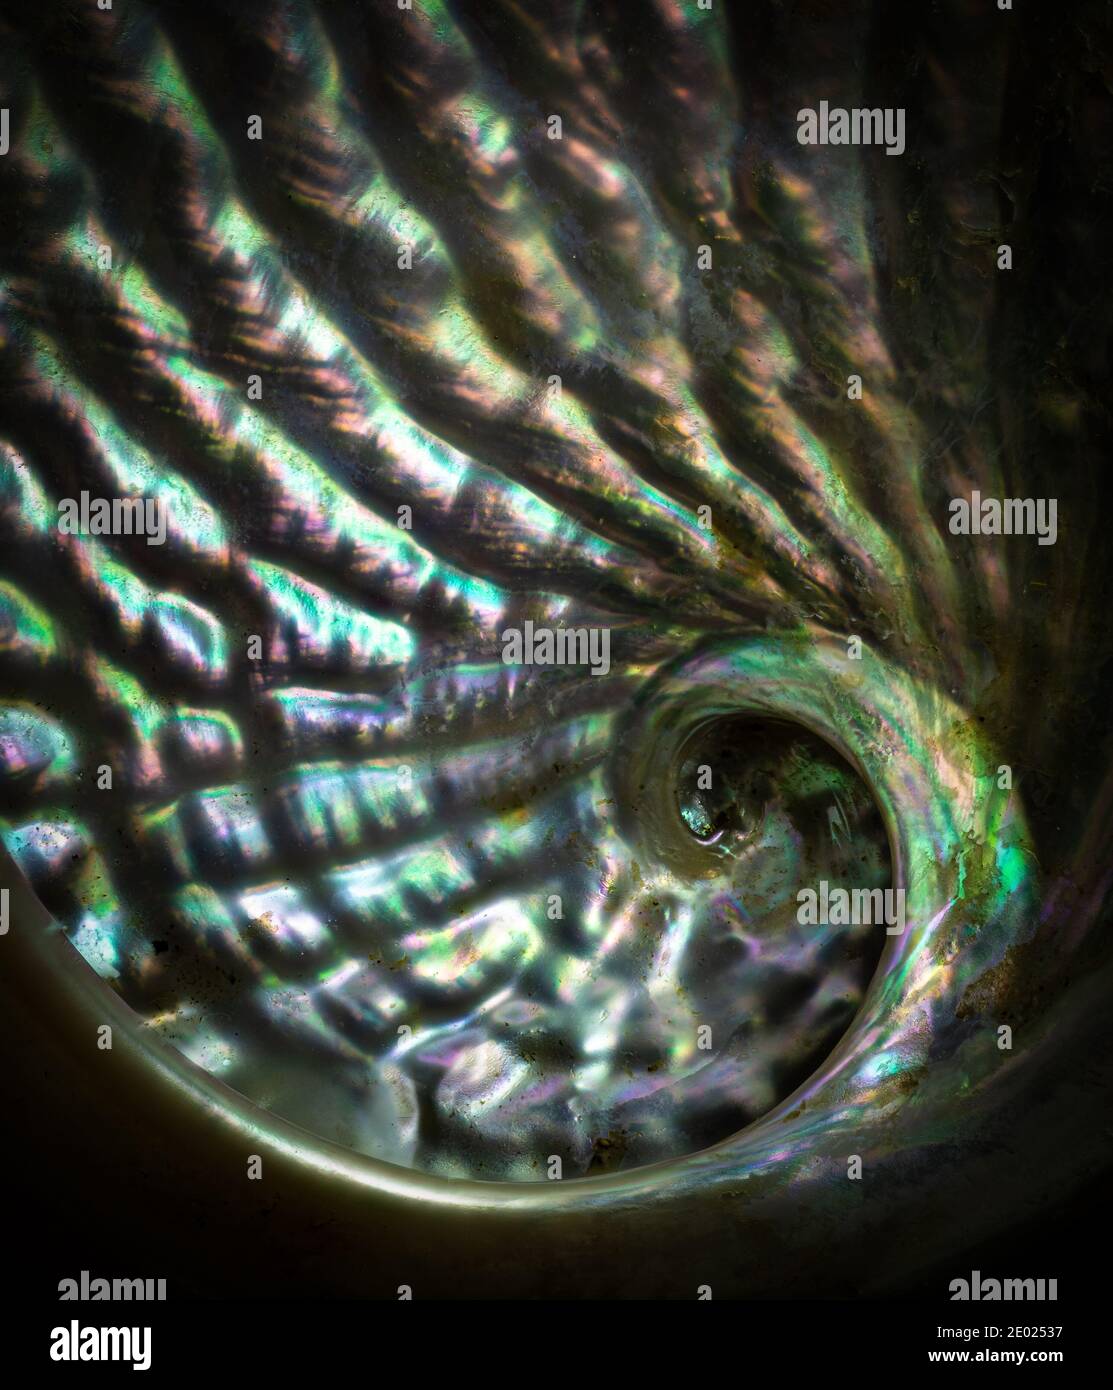 Vue macro de l'intérieur de la coquille de l'ormeau, montrant l'iridescence de la mère de la perle. Banque D'Images